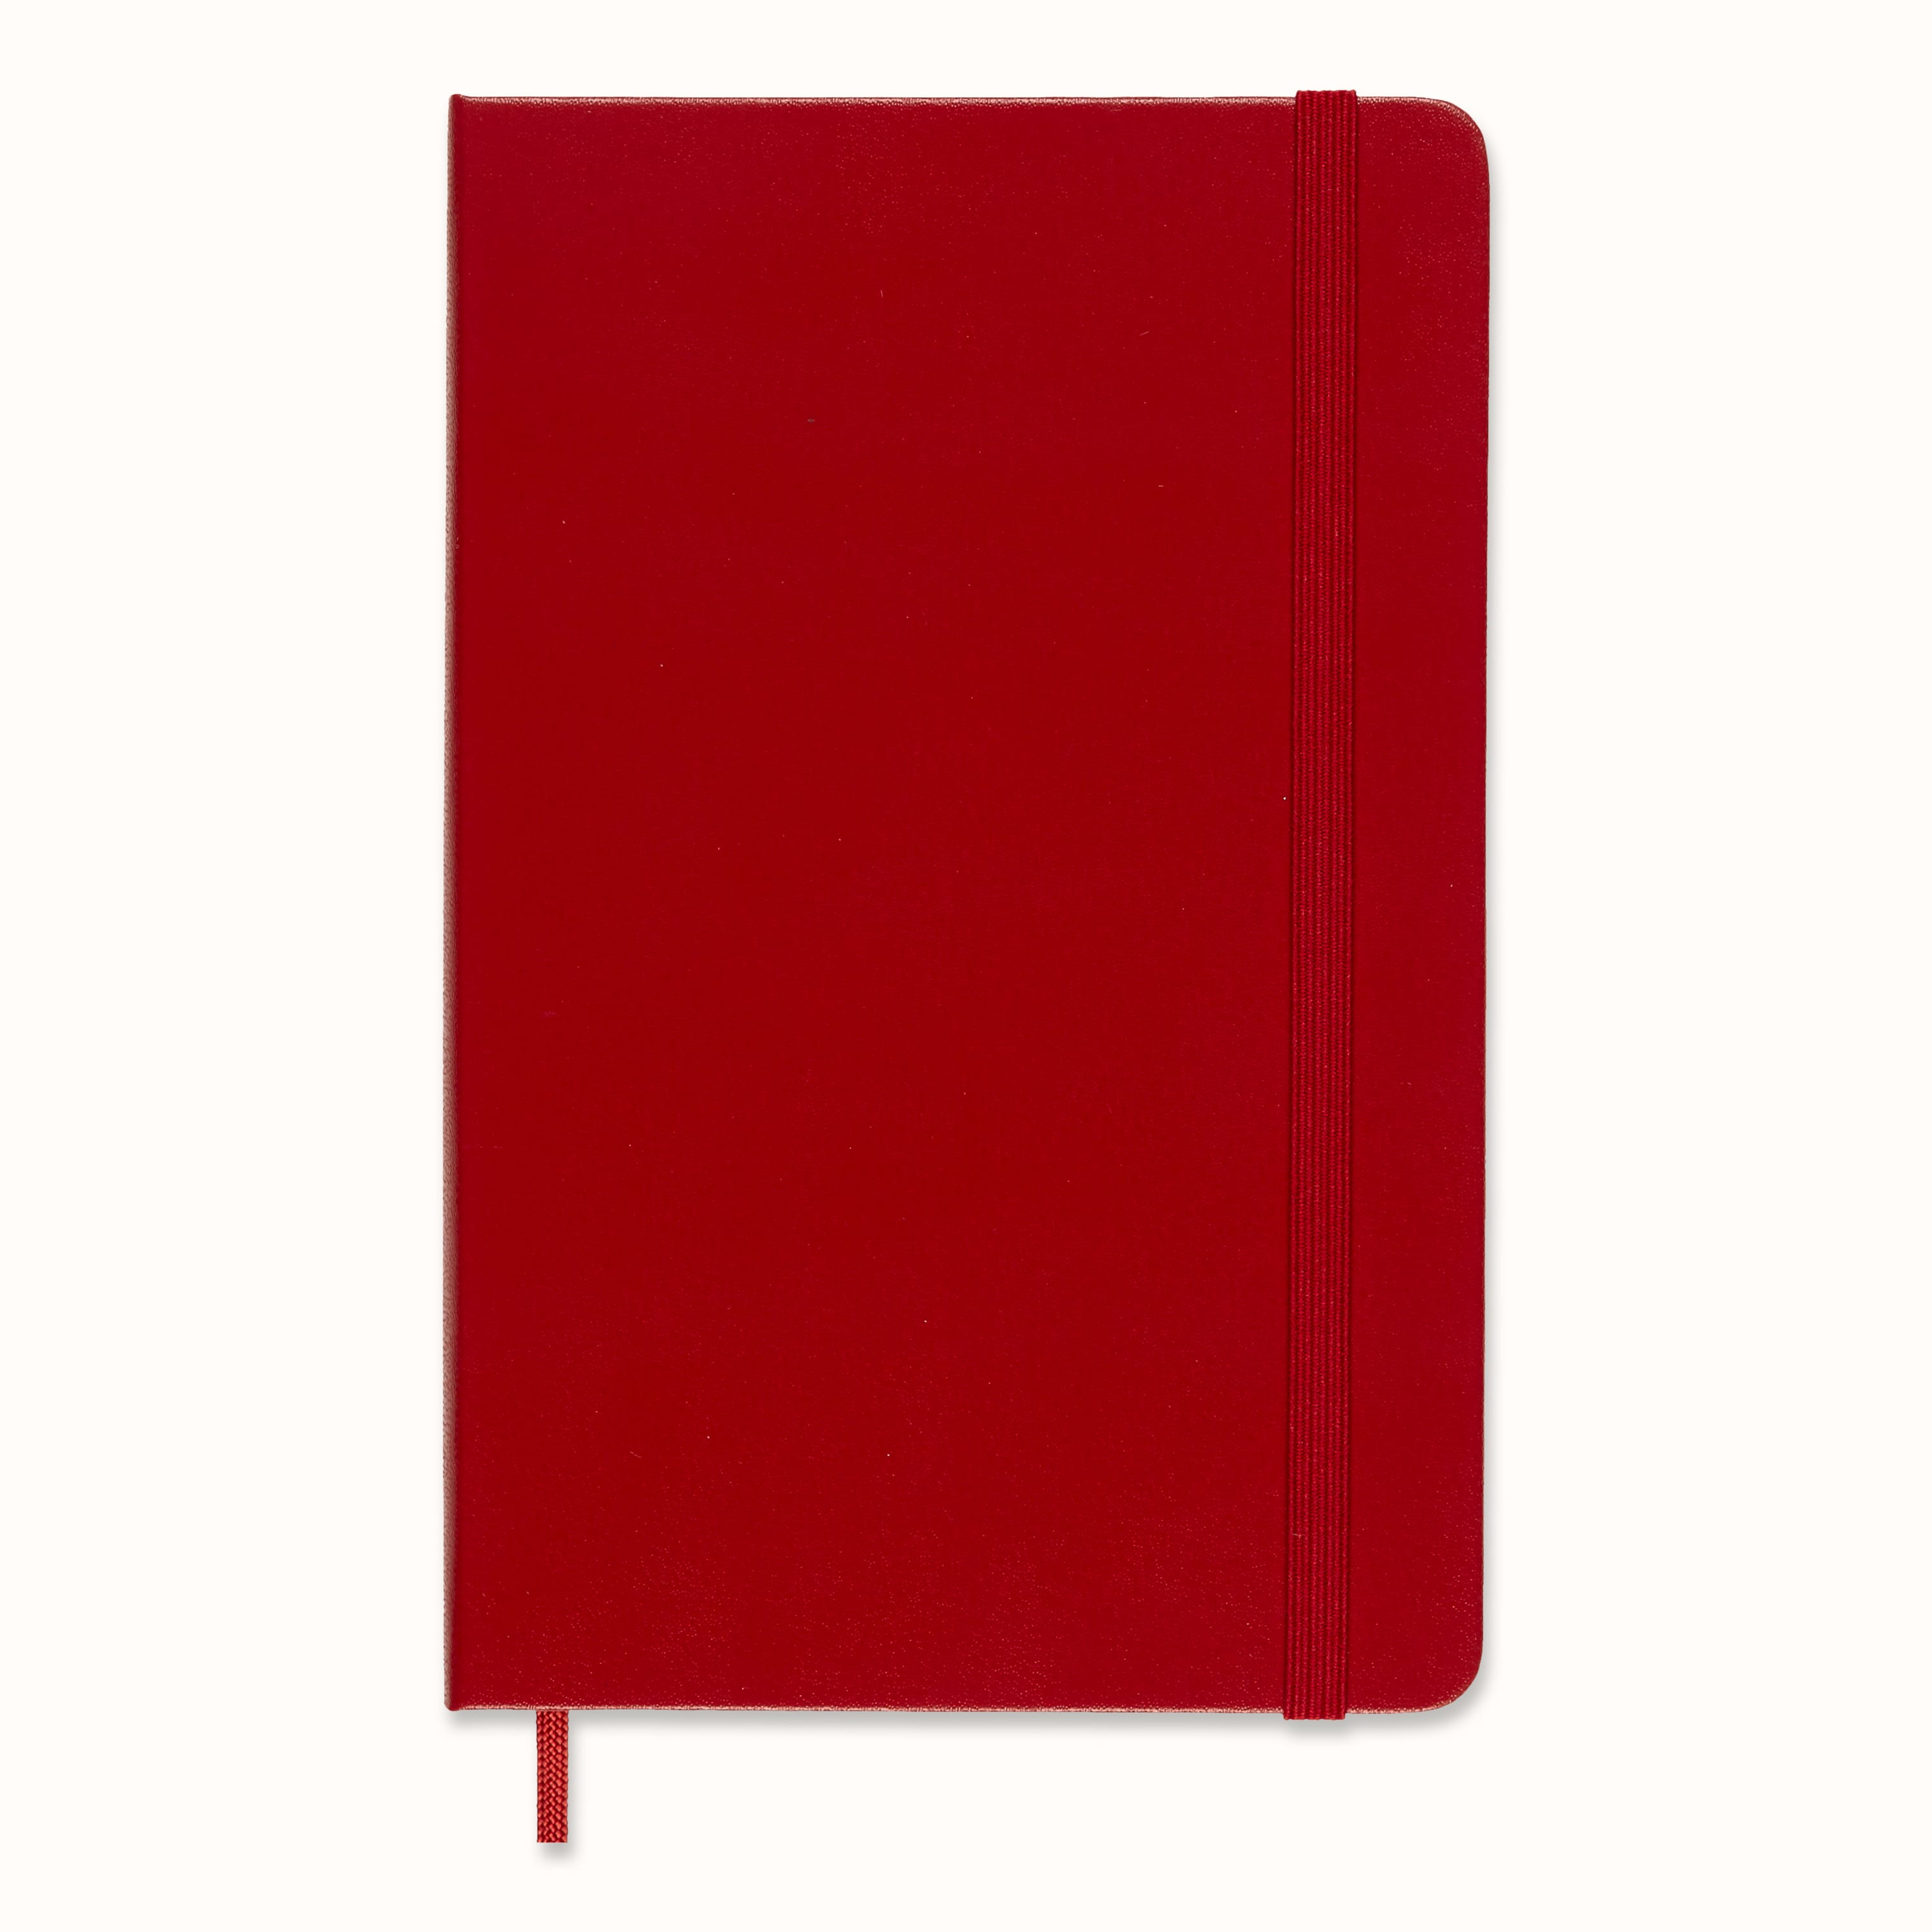 Moleskine Art Collection Sketchbook, Scarlet Red Cover, 5 x 8.25